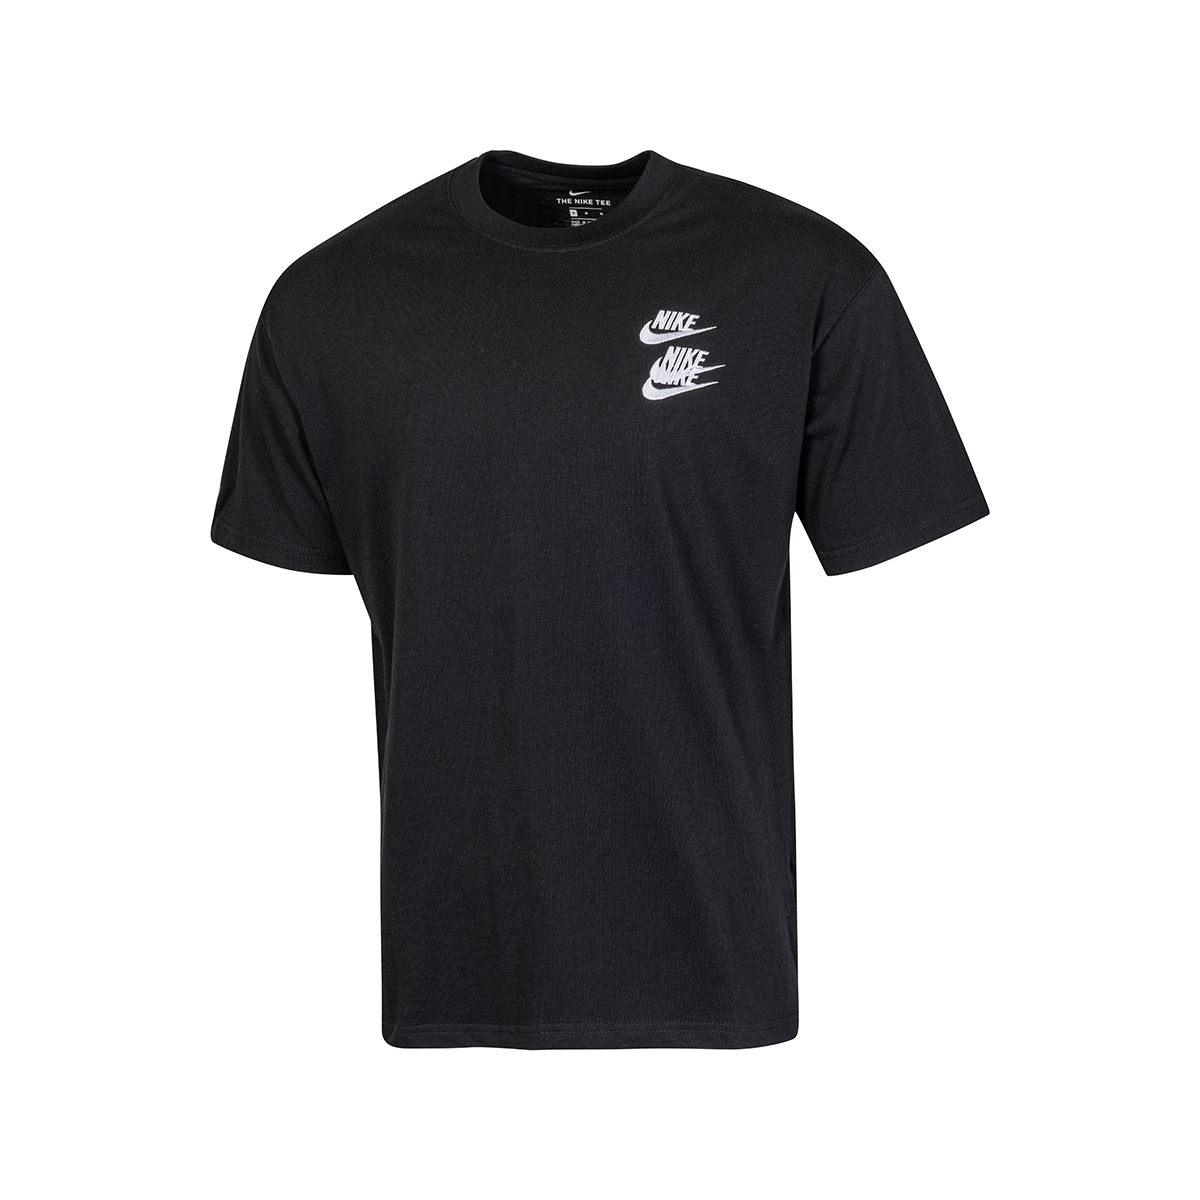 Nike World Tour T-shirt Black – Pure Soles PH